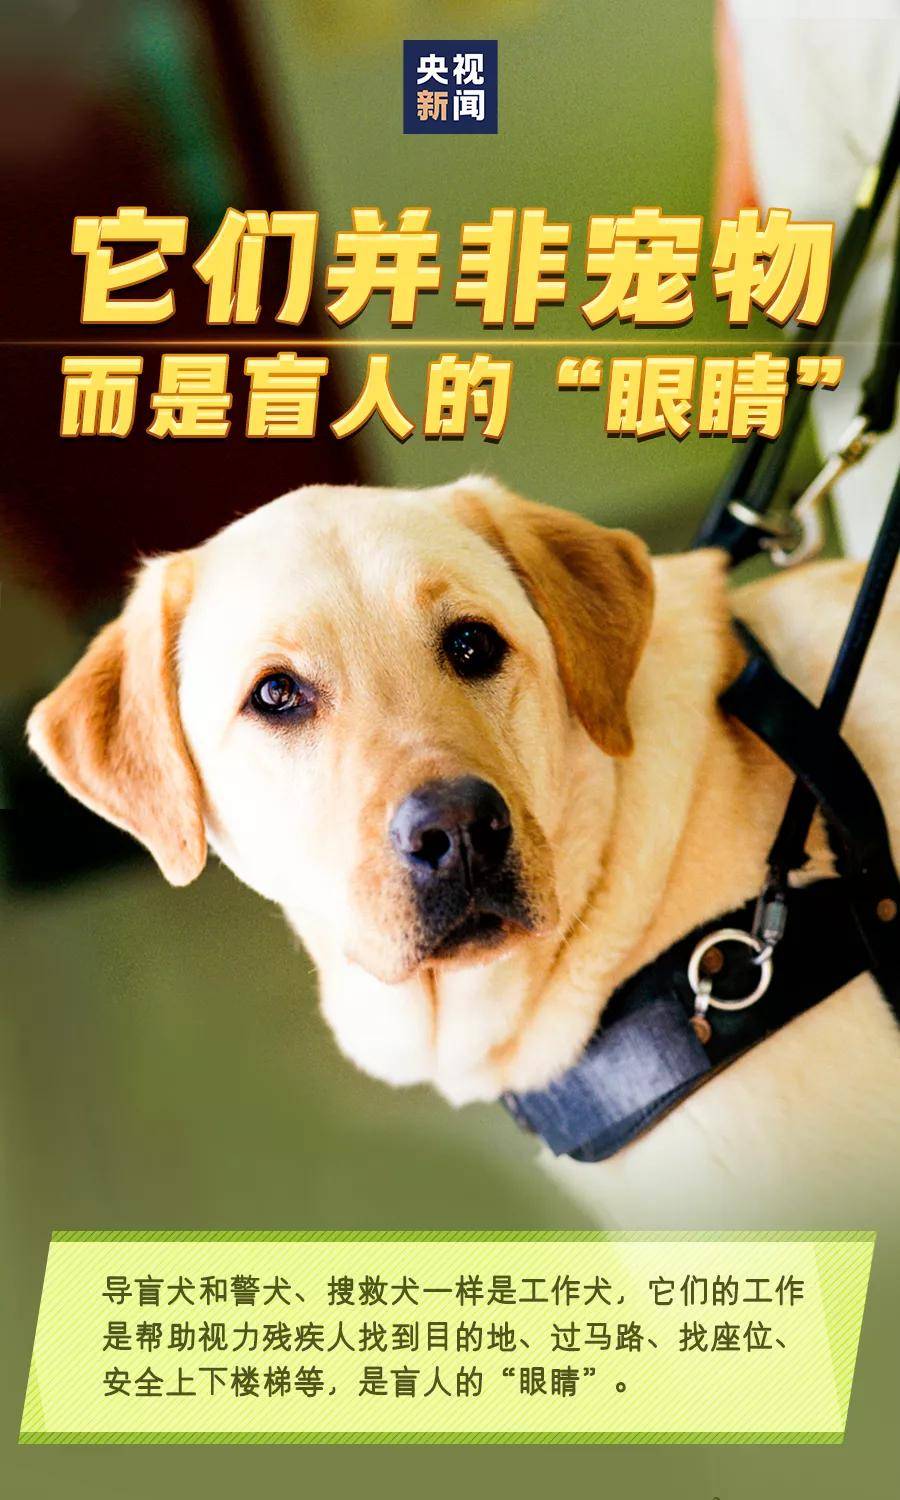 国际导盲犬日请善待导盲犬它们是盲人的眼睛你愿和导盲犬同行吗